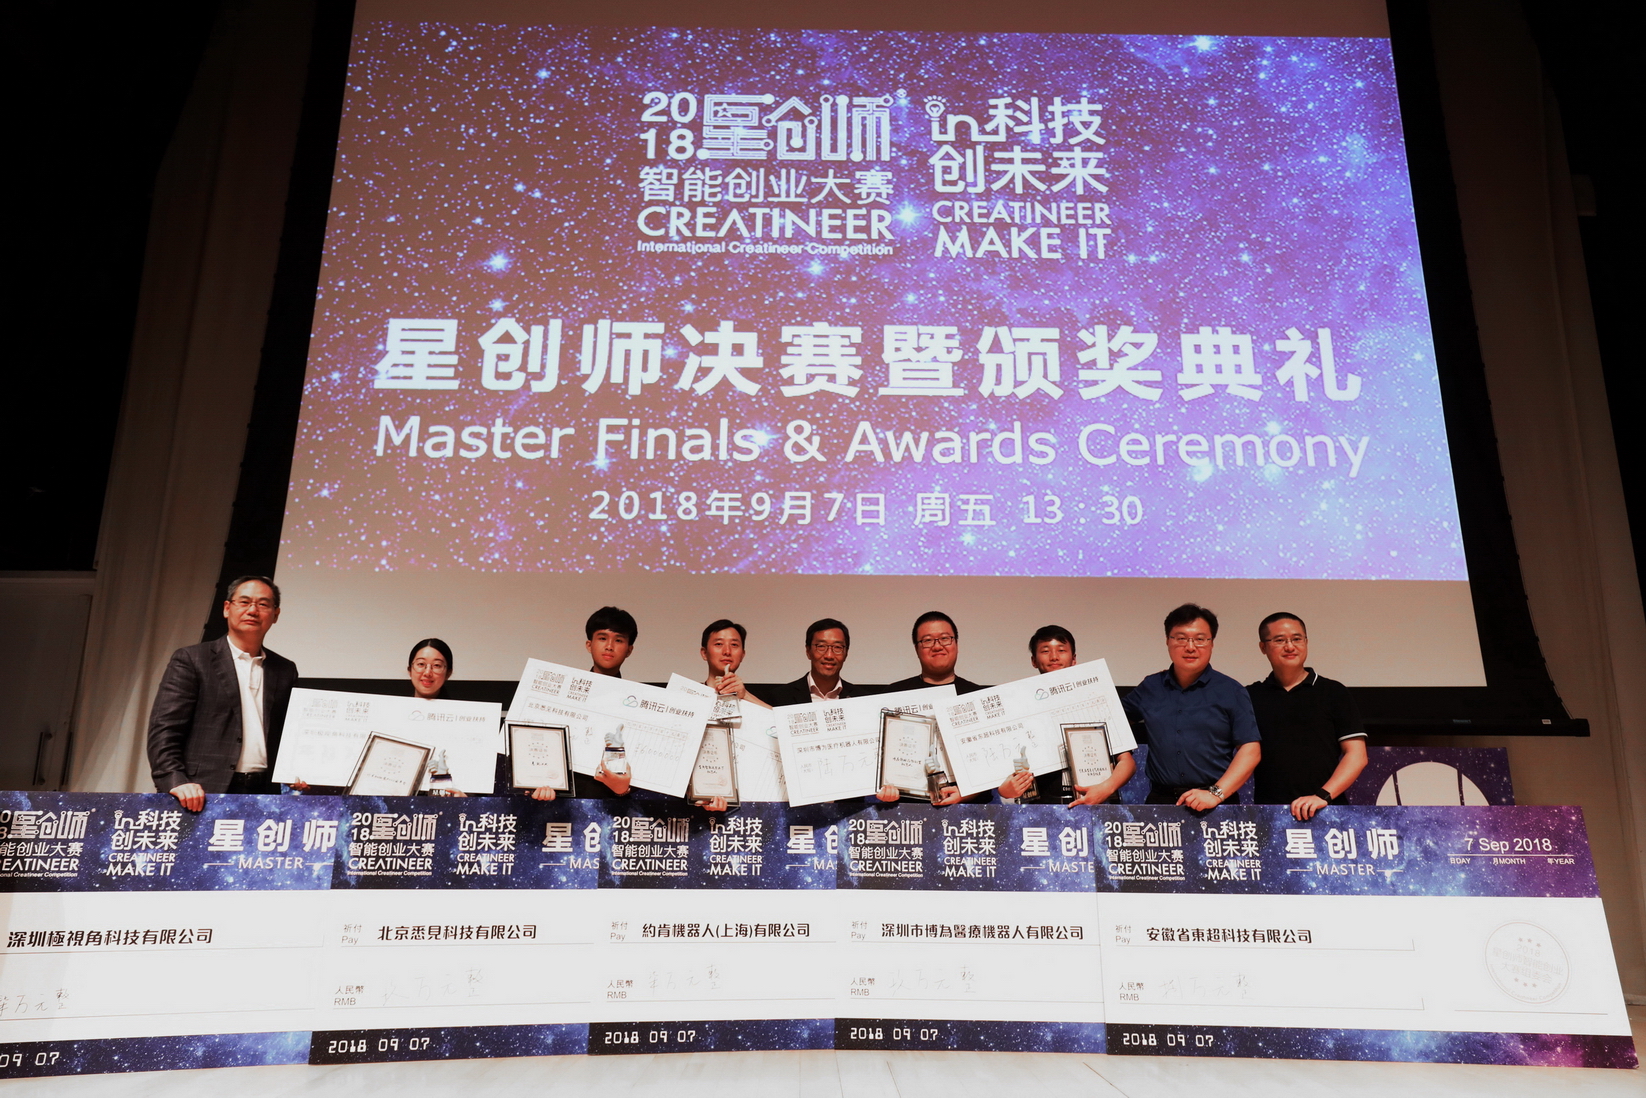 香港科技園公司行政總裁黃克強（中）及新松機器人集團總裁暨中國機器人產業聯盟理事長曲道奎博士（左一）與五隊參賽隊伍代表於台上合照。